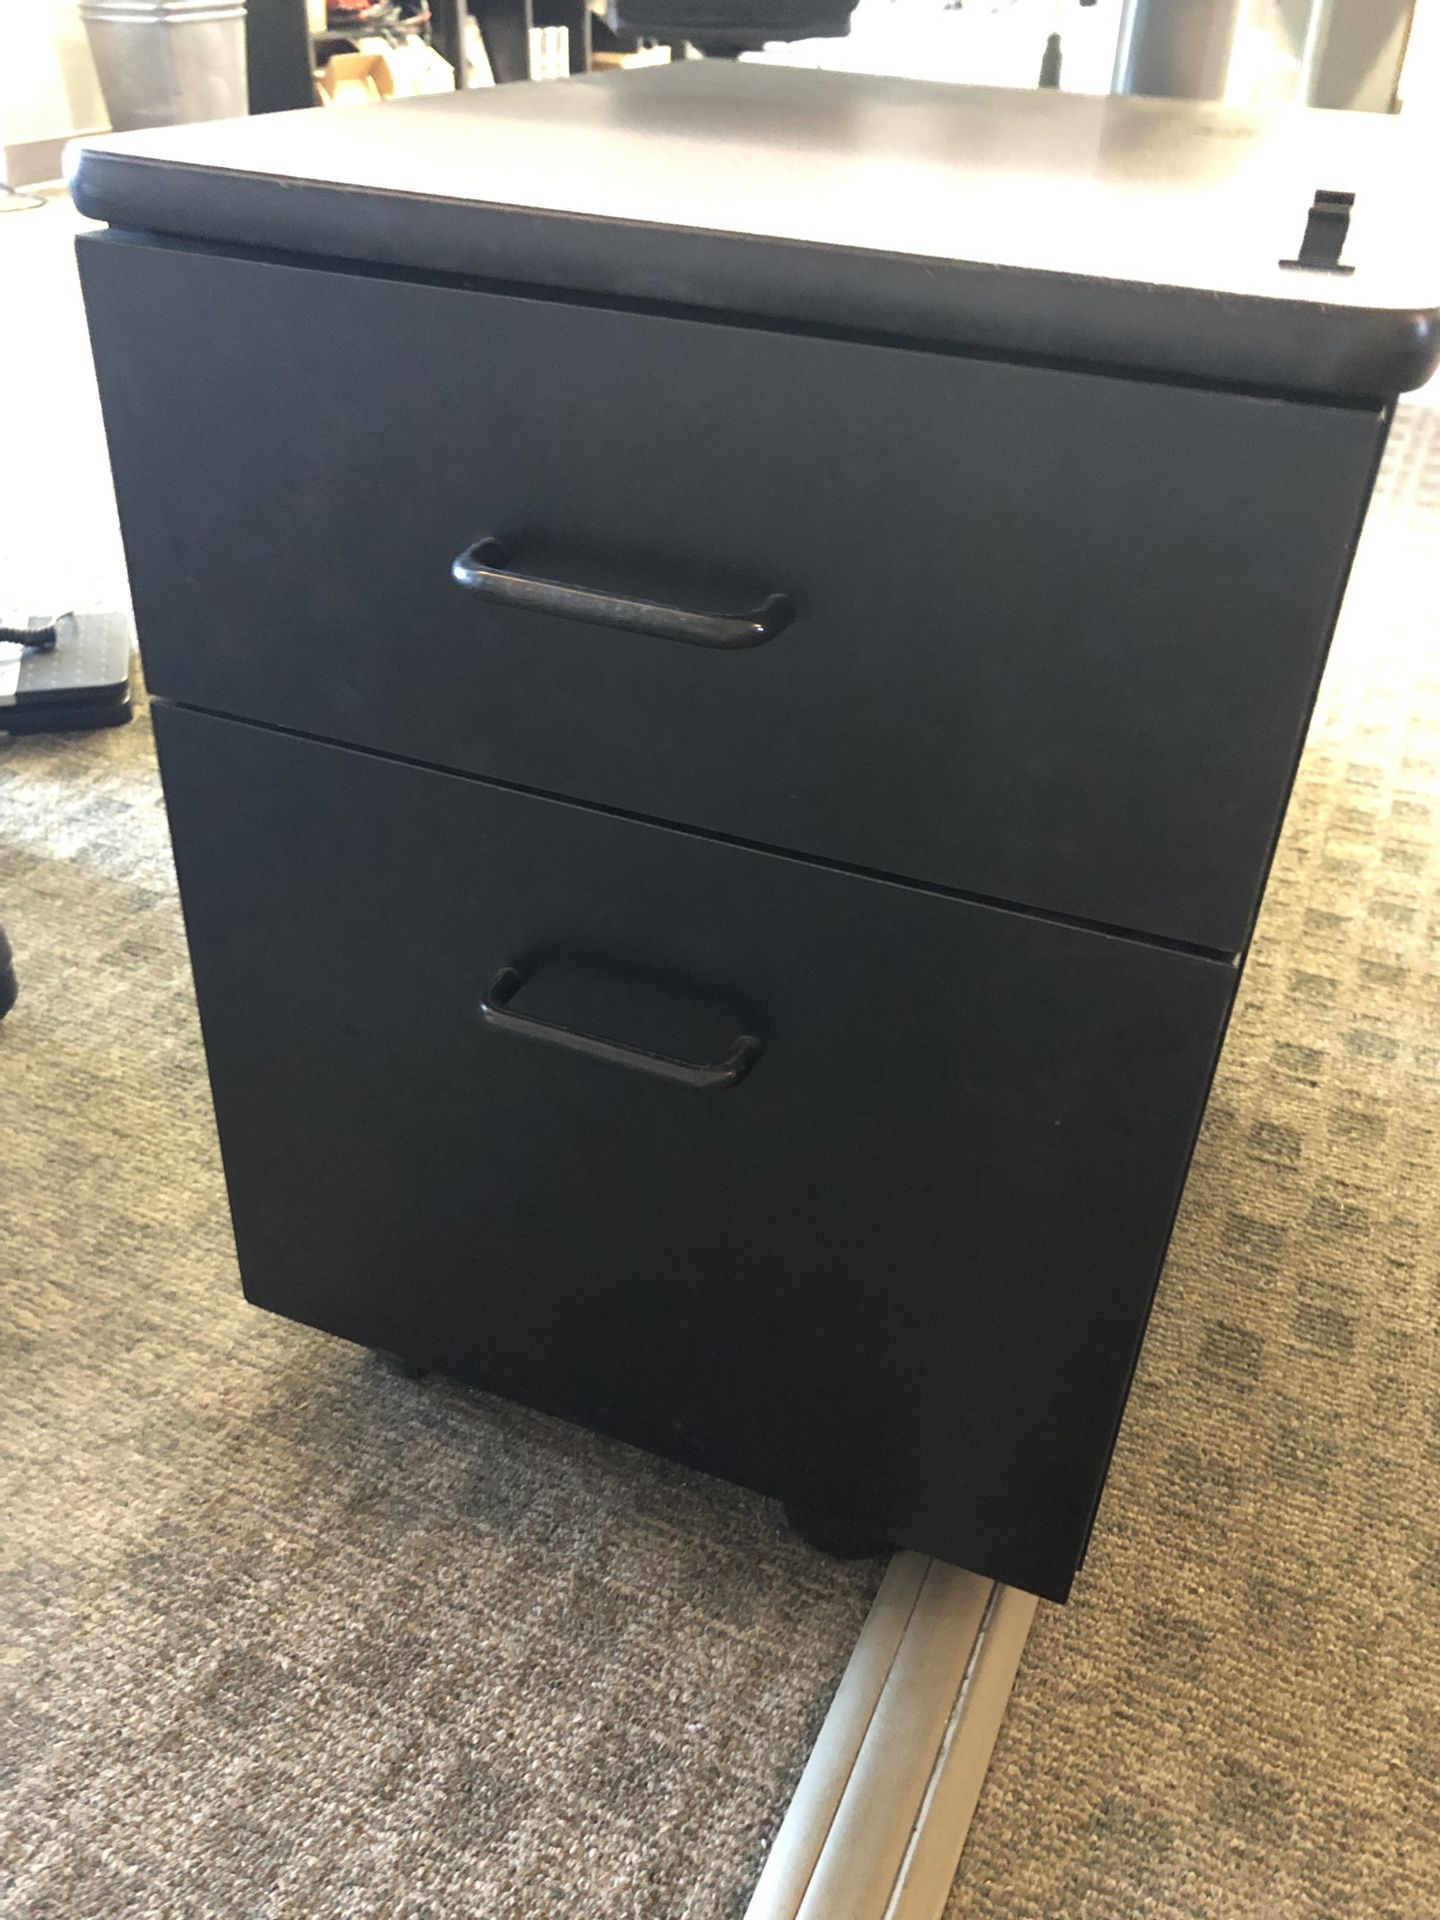 Desk drawer filing cabinet